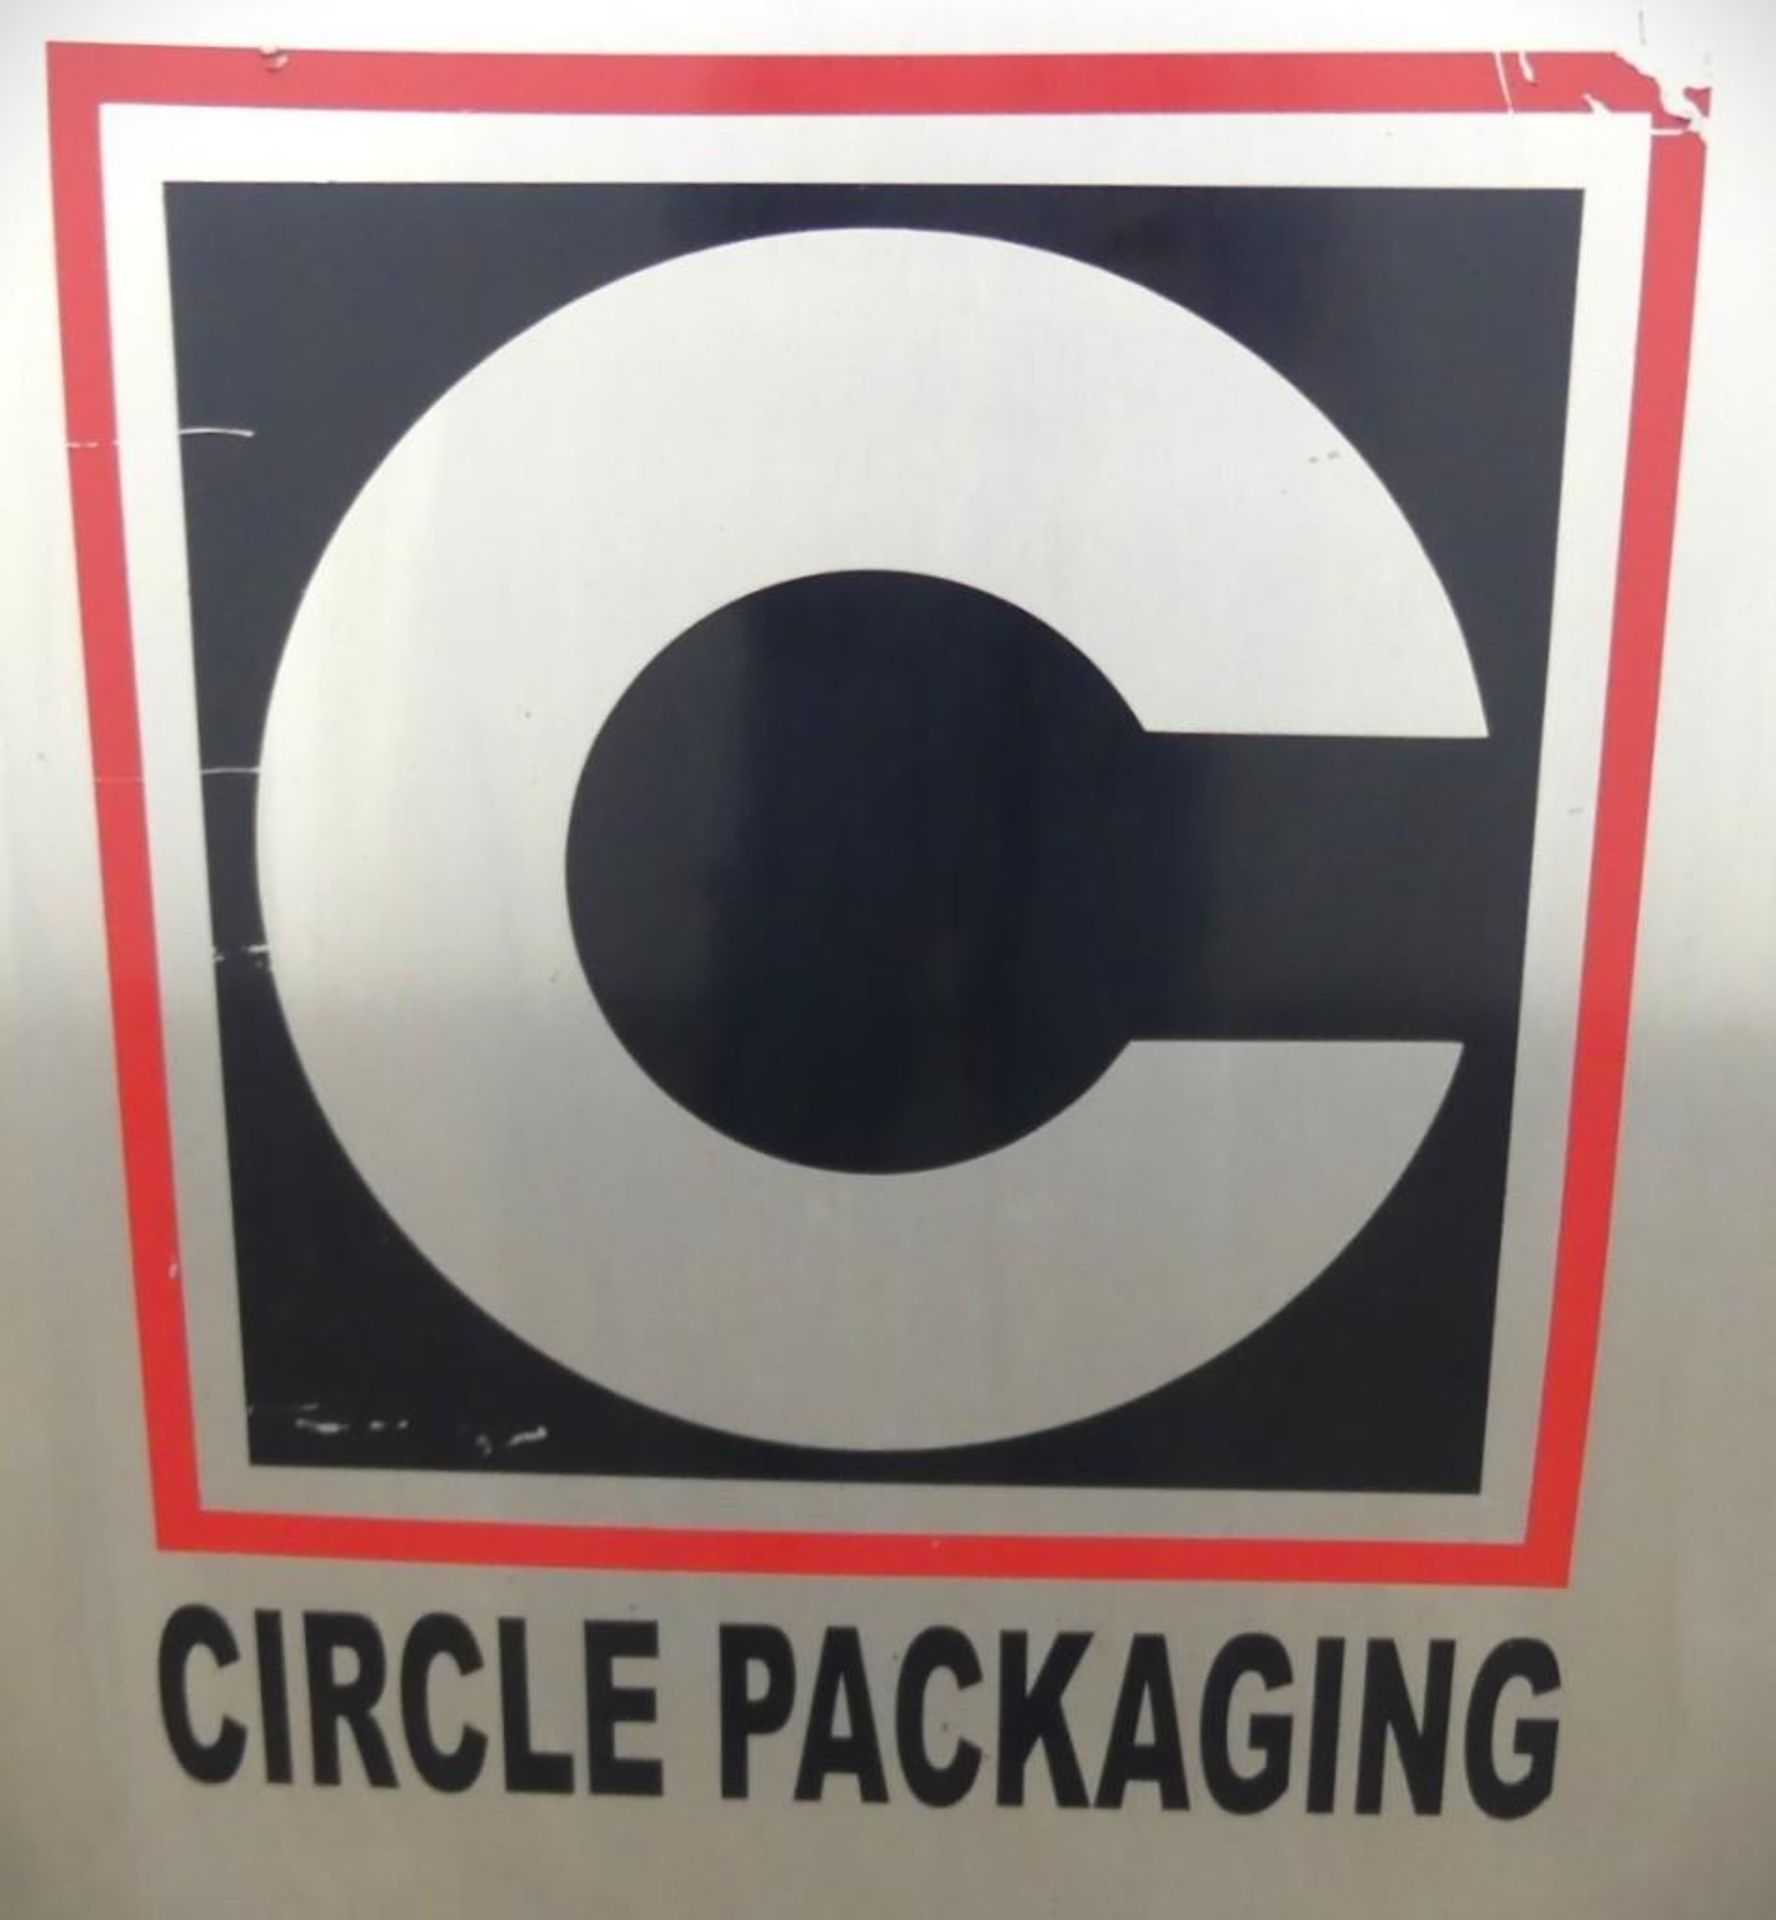 6 Lane Circle Packaging Stick Pak - Image 27 of 27